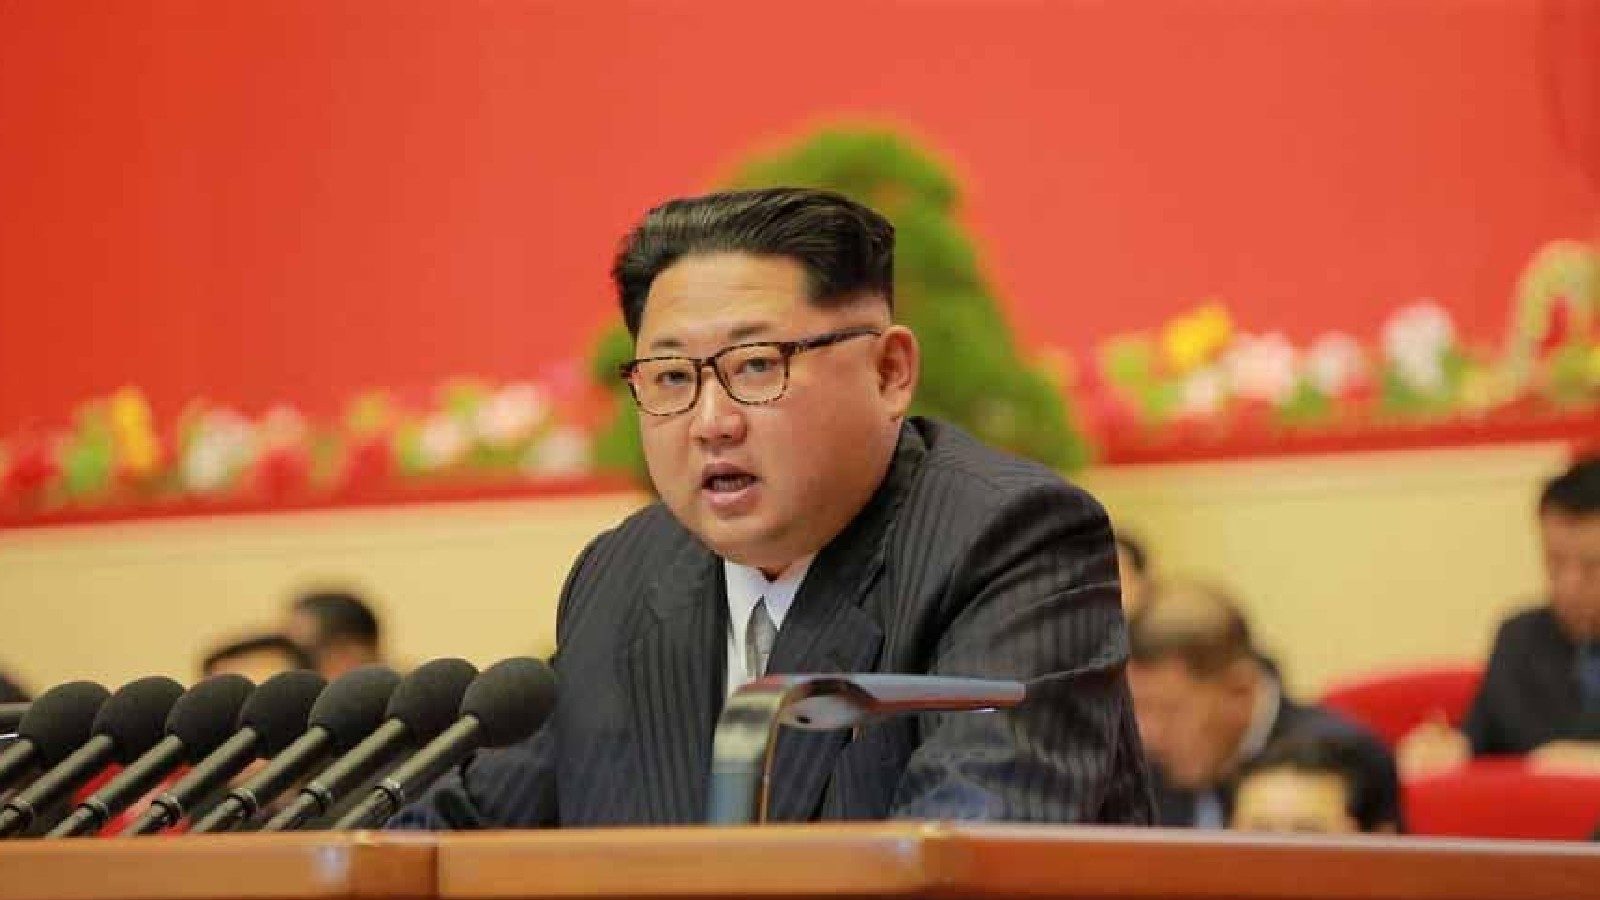 आफ्नो बालबालिकाको नाम "बम, बन्दुक, स्याटेलाइट" राख्न अभिभावकलाई उत्तर कोरिया सरकारको आदेश 